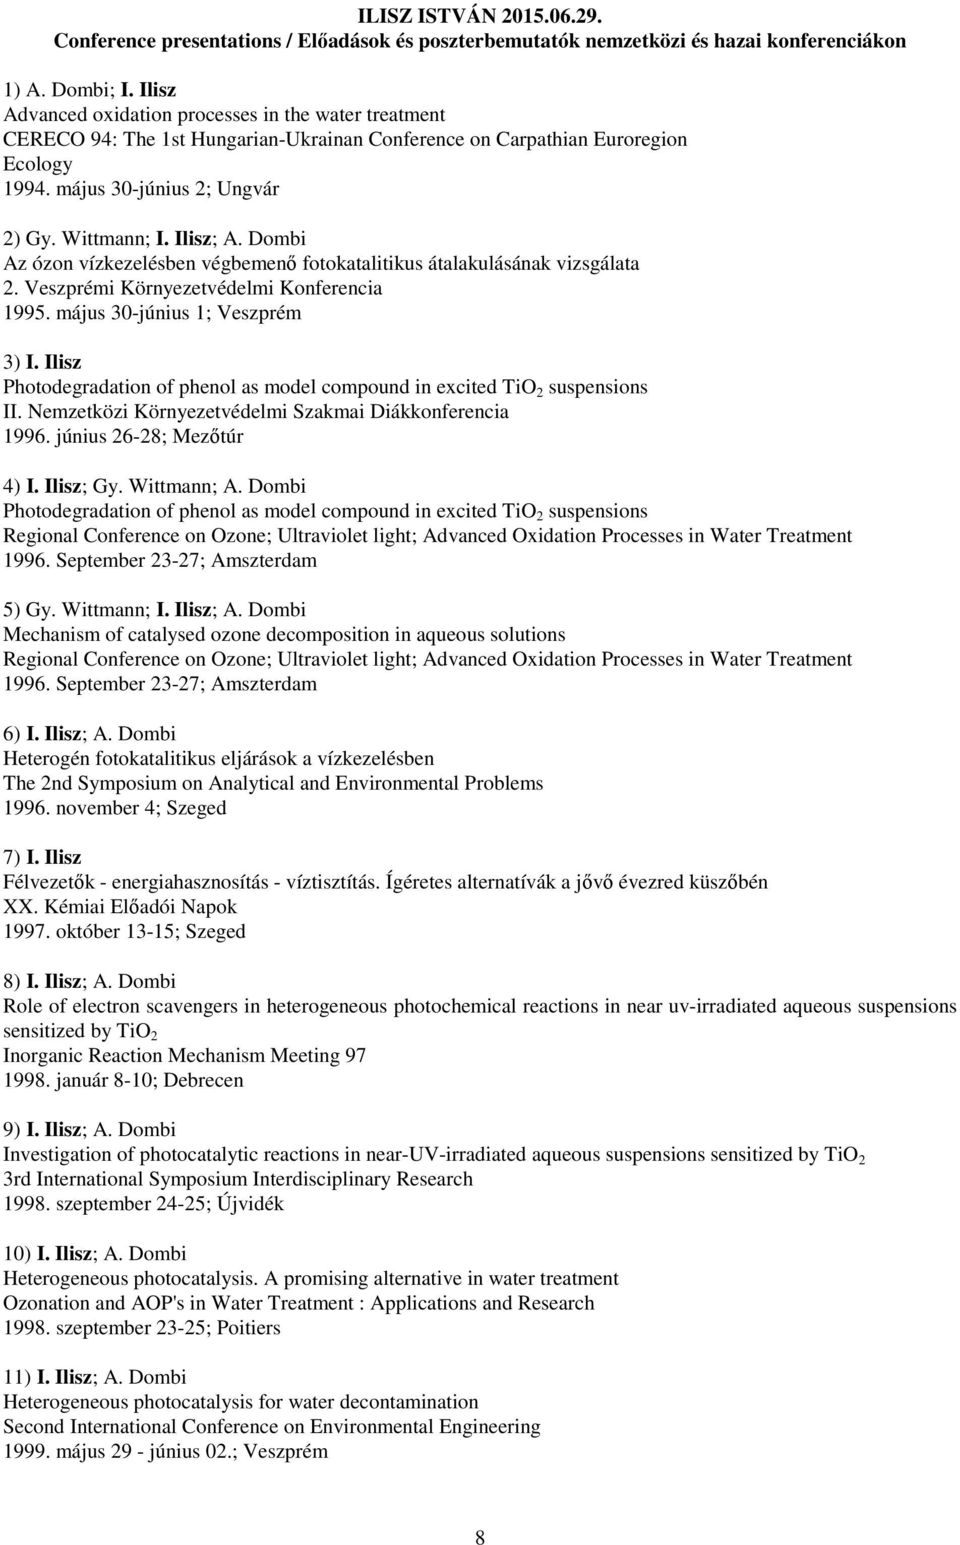 Ilisz; A. Dombi Az ózon vízkezelésben végbemenő fotokatalitikus átalakulásának vizsgálata 2. Veszprémi Környezetvédelmi Konferencia 1995. május 30-június 1; Veszprém 3) I.